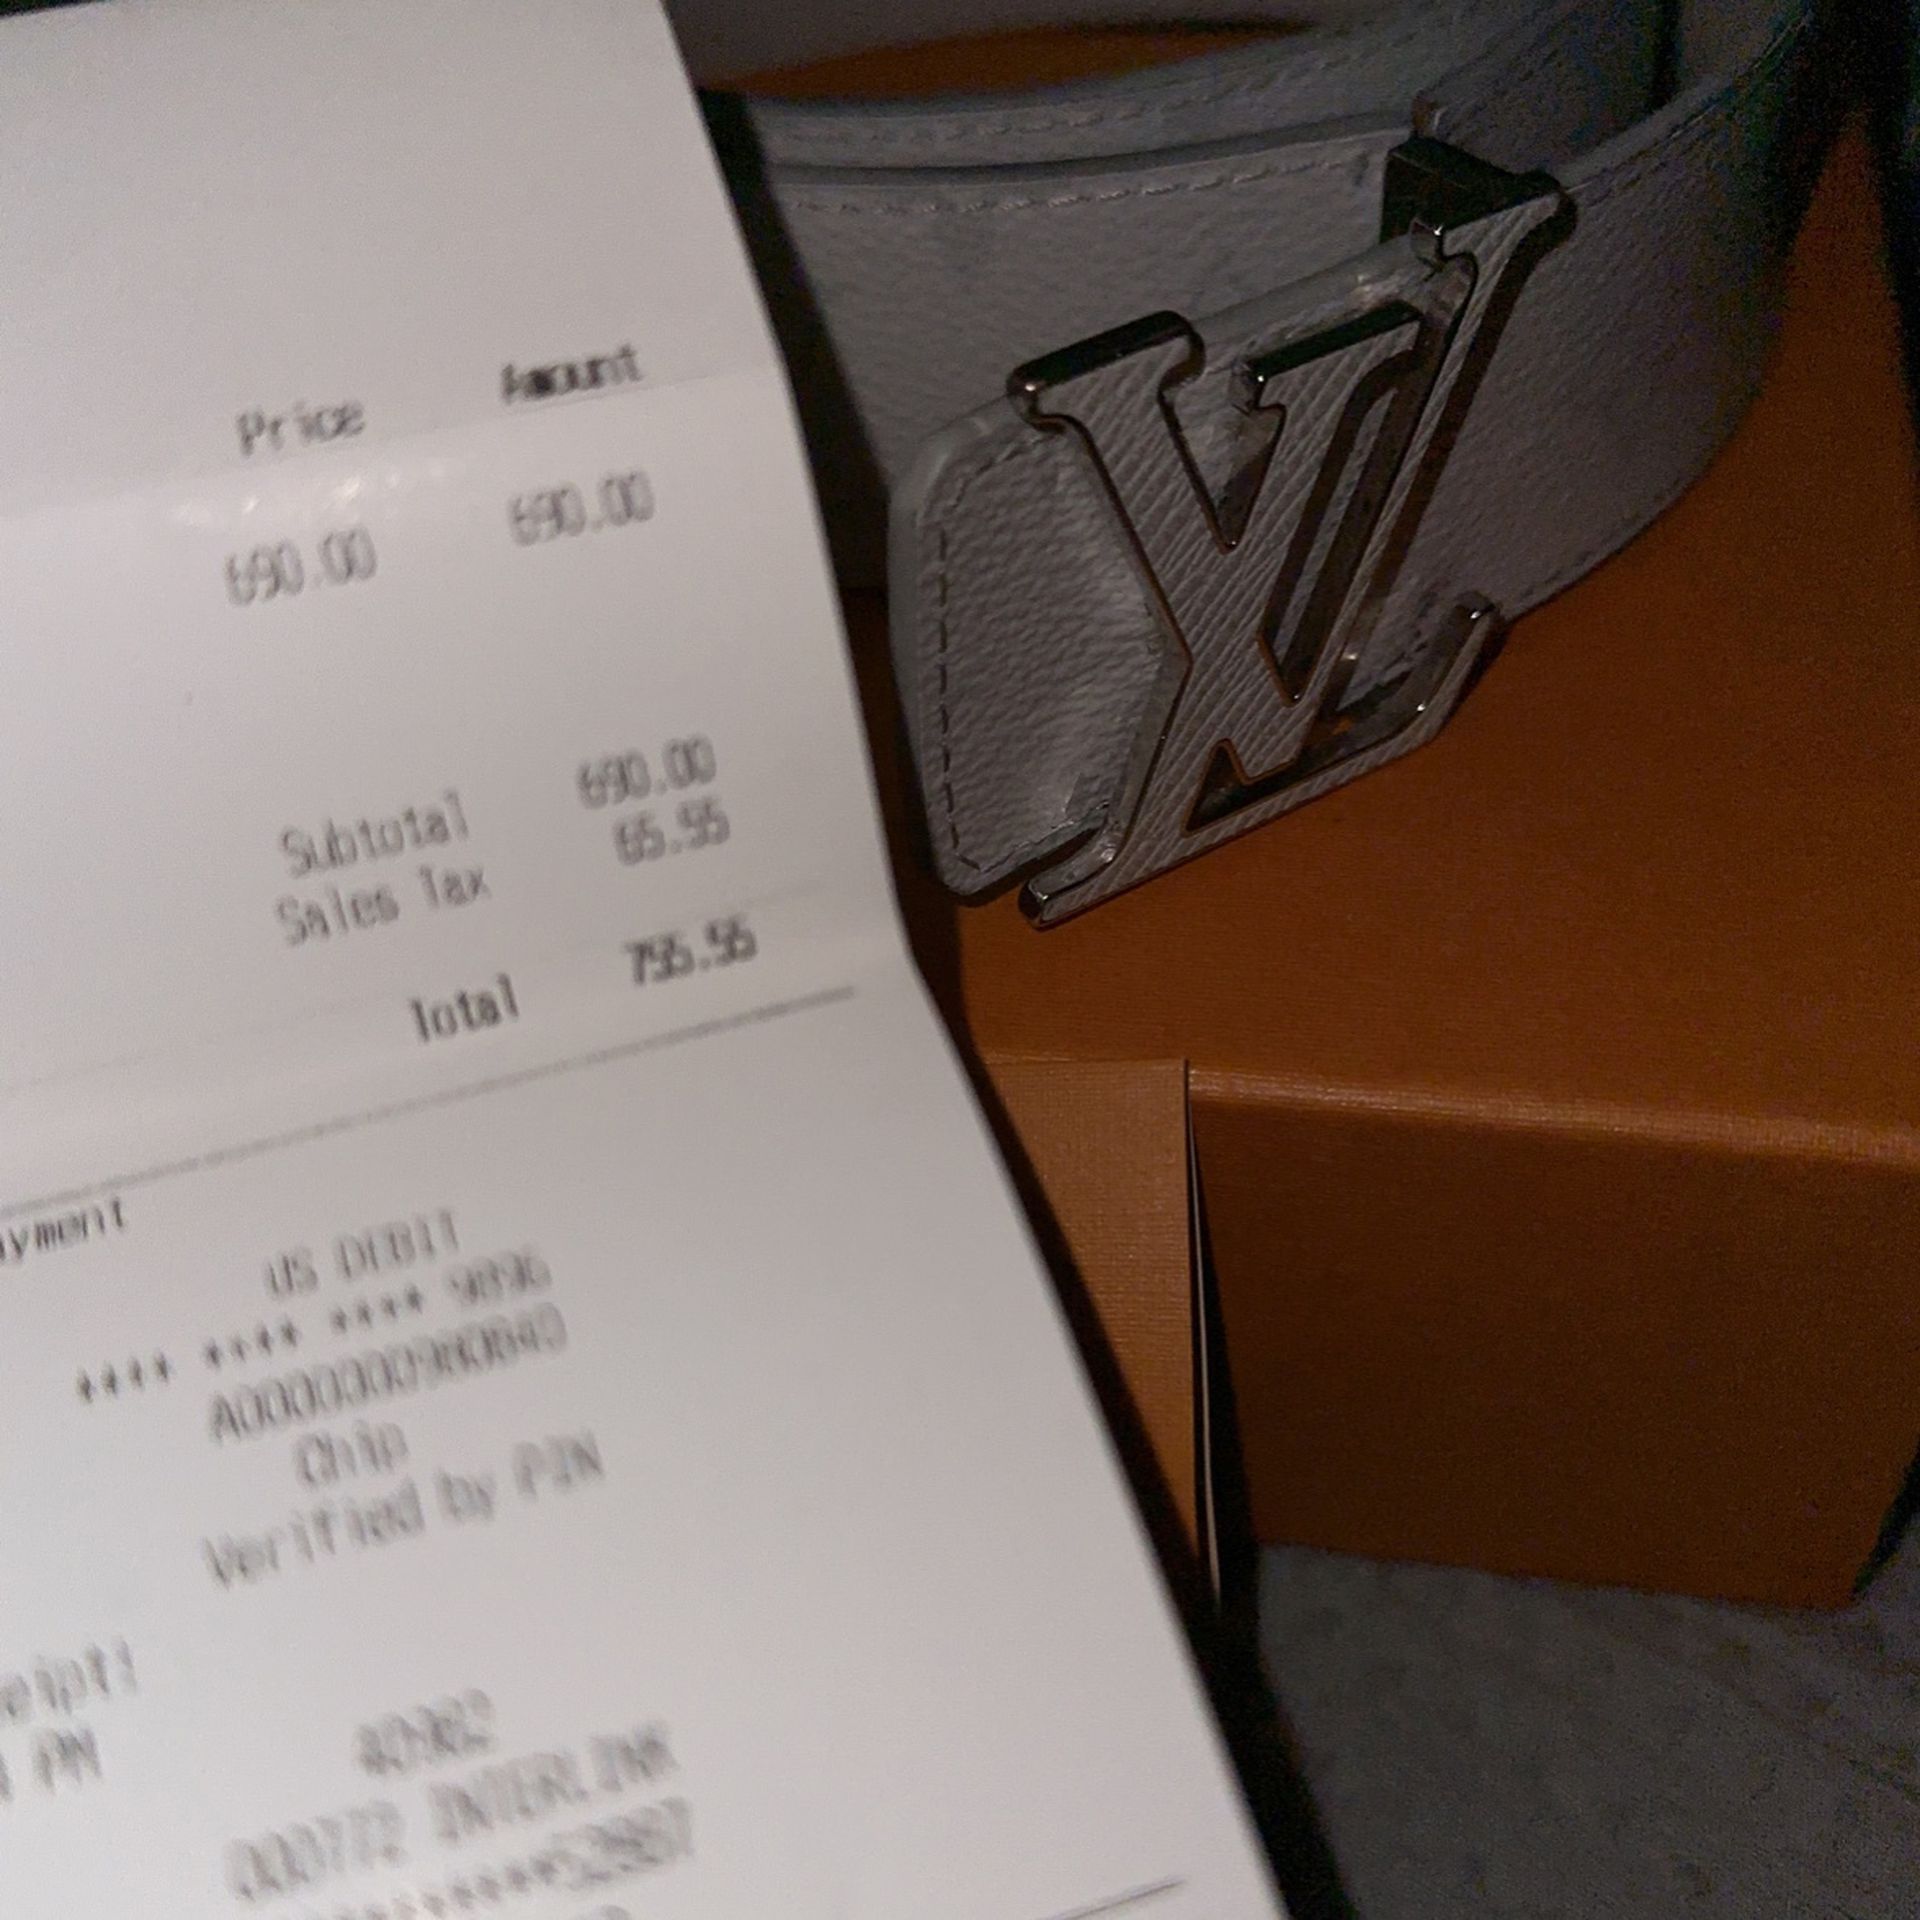 Louis Vuitton Kids Belt for Sale in Palmdale, CA - OfferUp